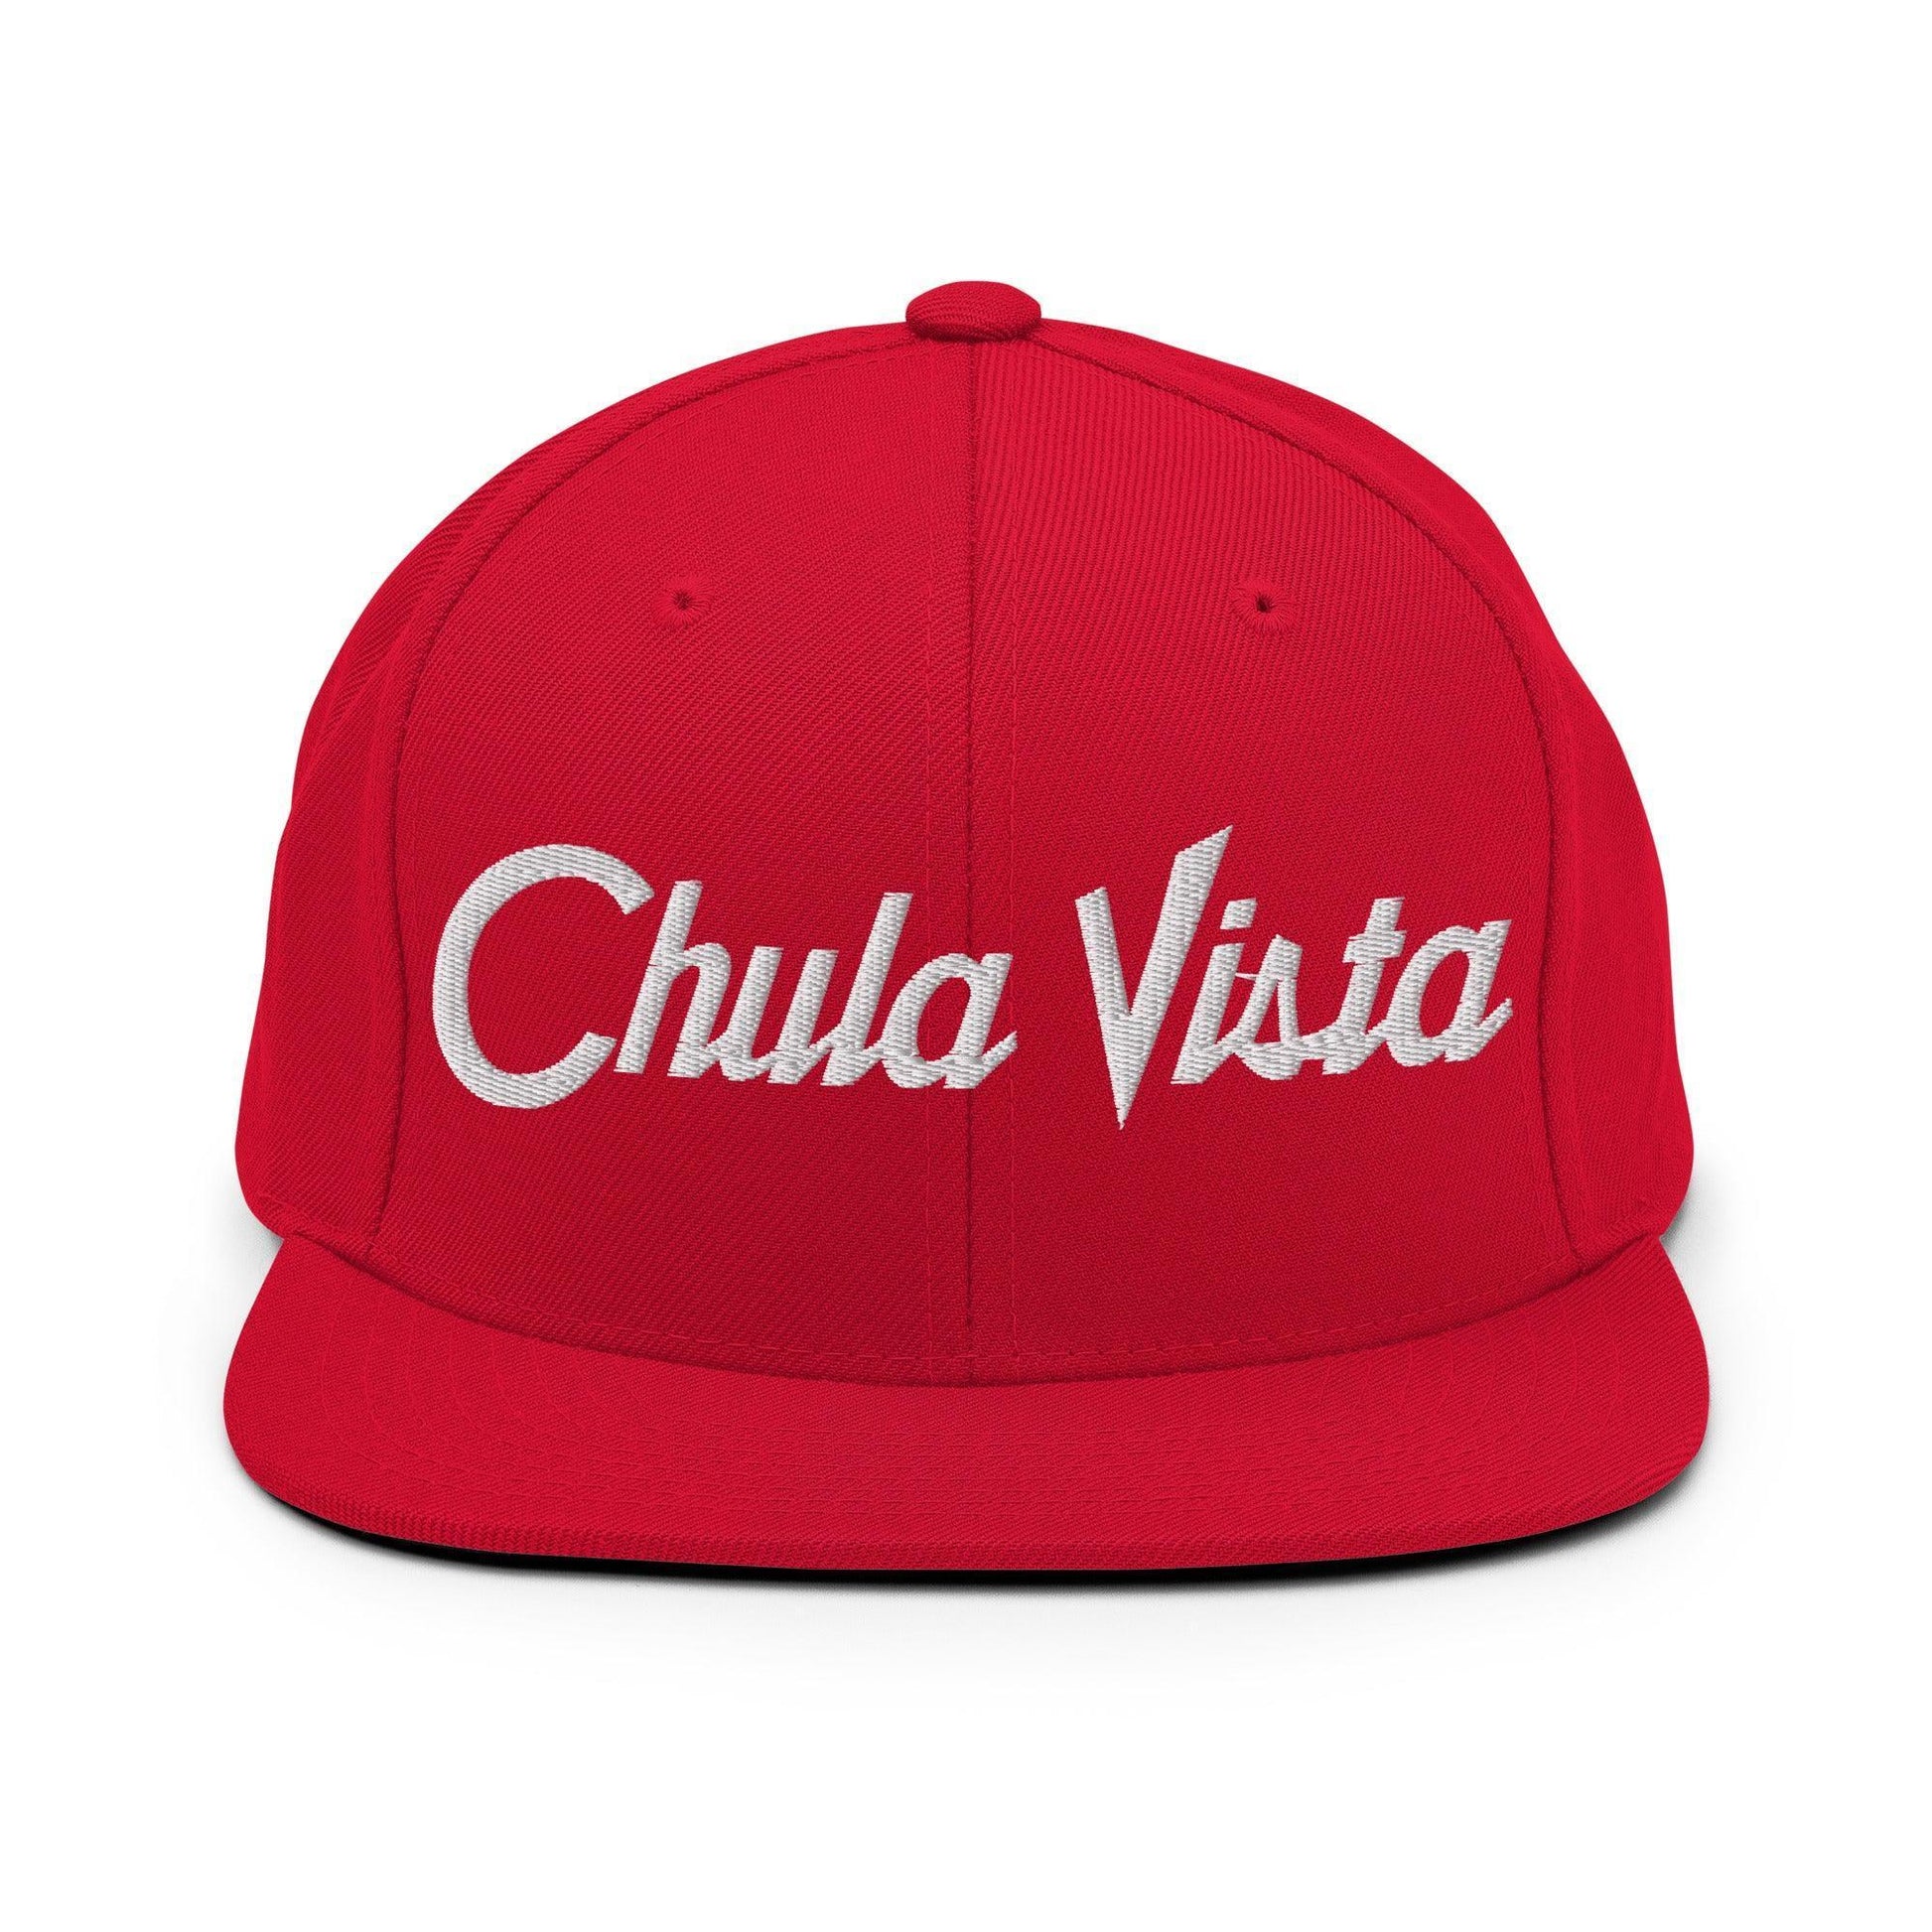 Chula Vista Script Snapback Hat Red